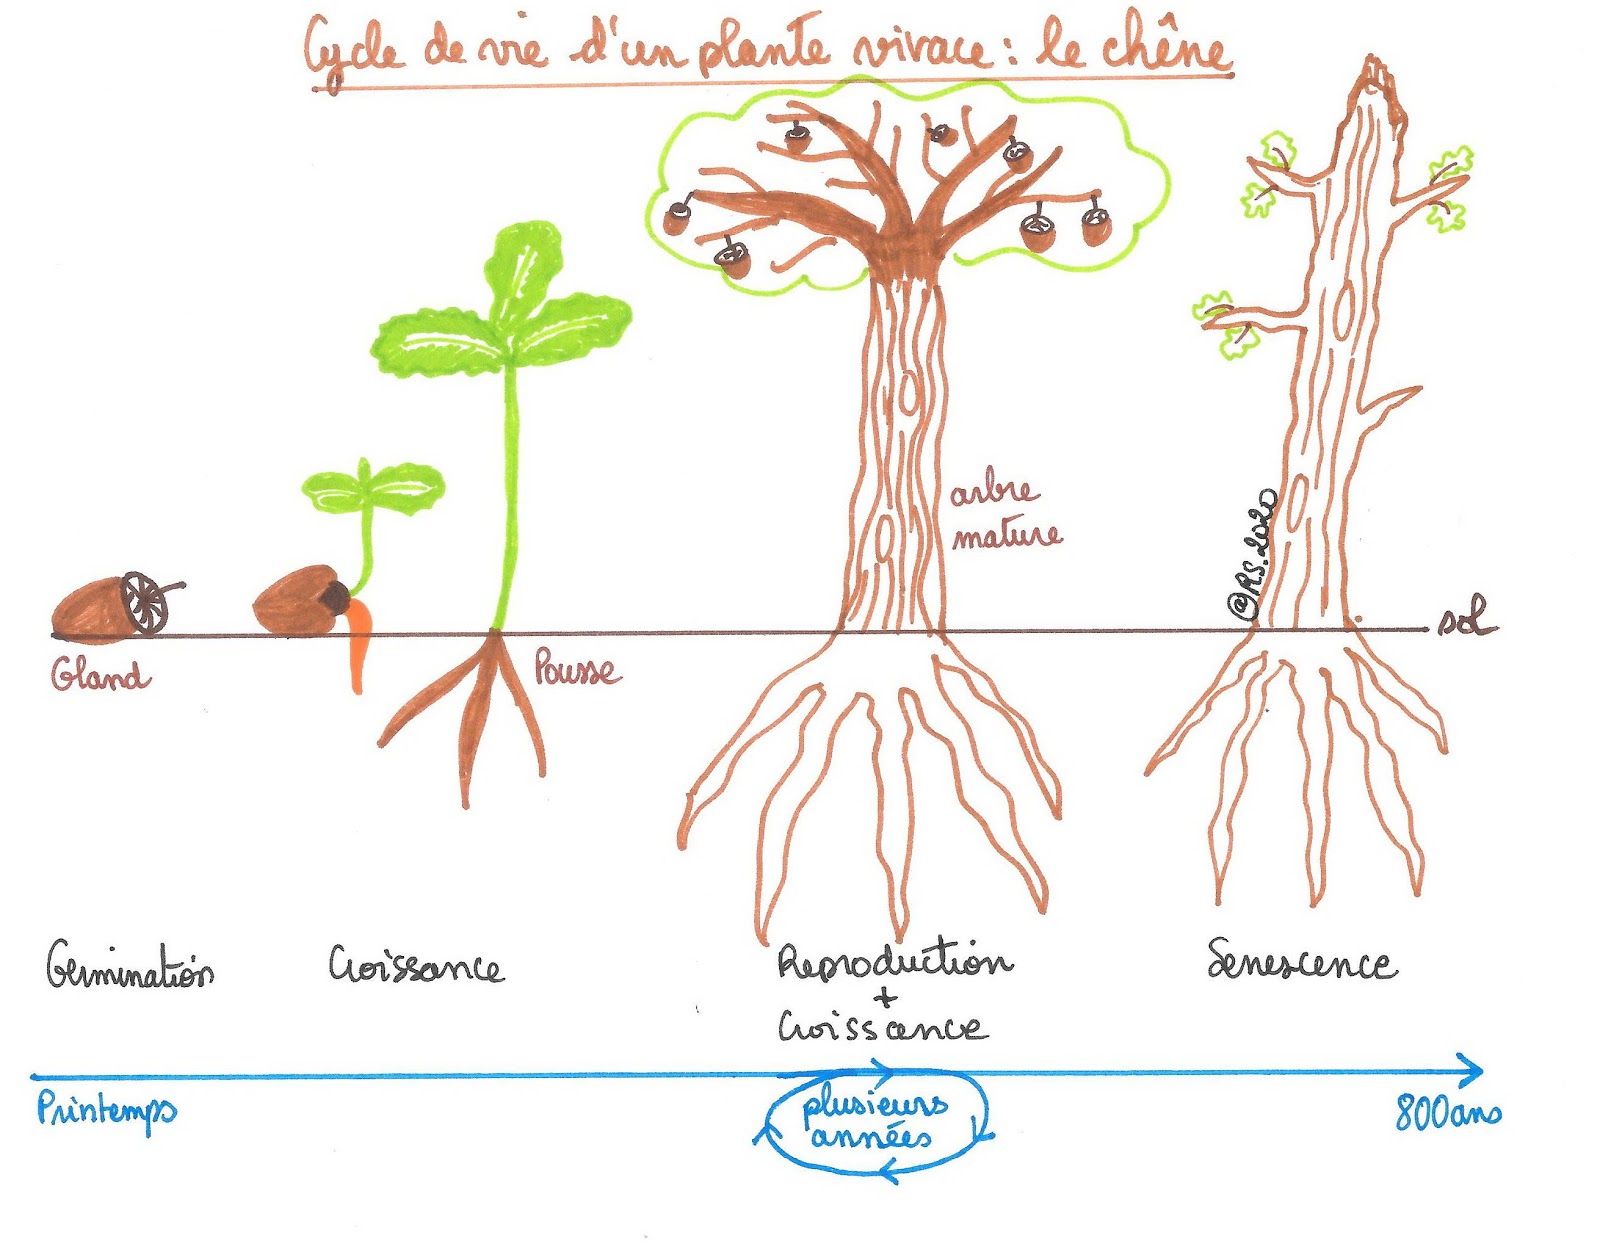 <b>Cycle de vie d’une plante vivace : le chêne</b>